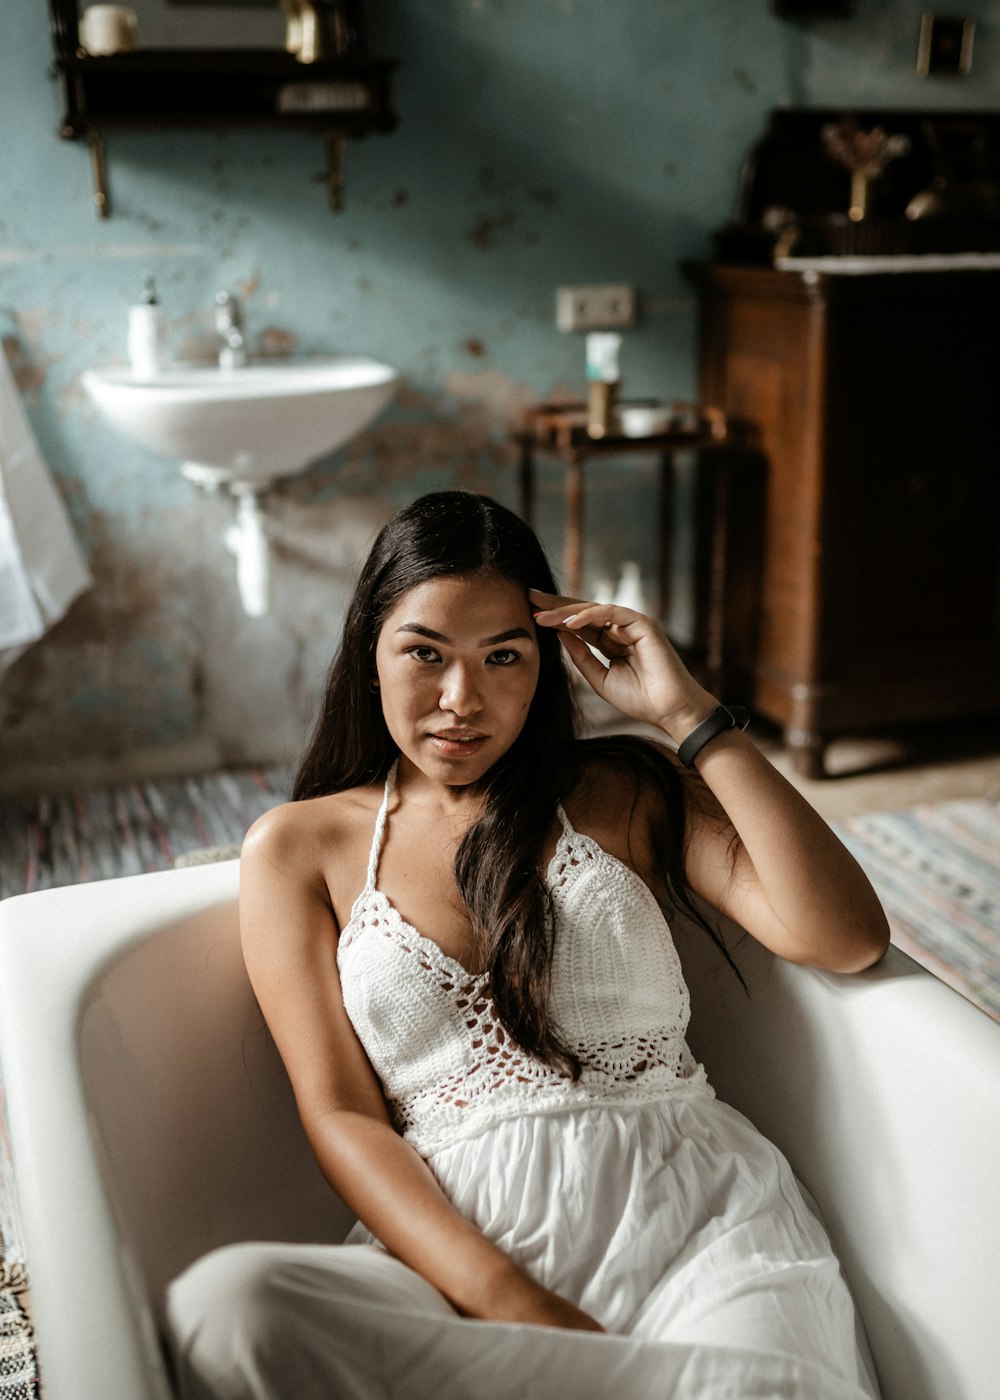 Mujer en vestido blanco sin mangas sentada en bañera de cerámica blanca